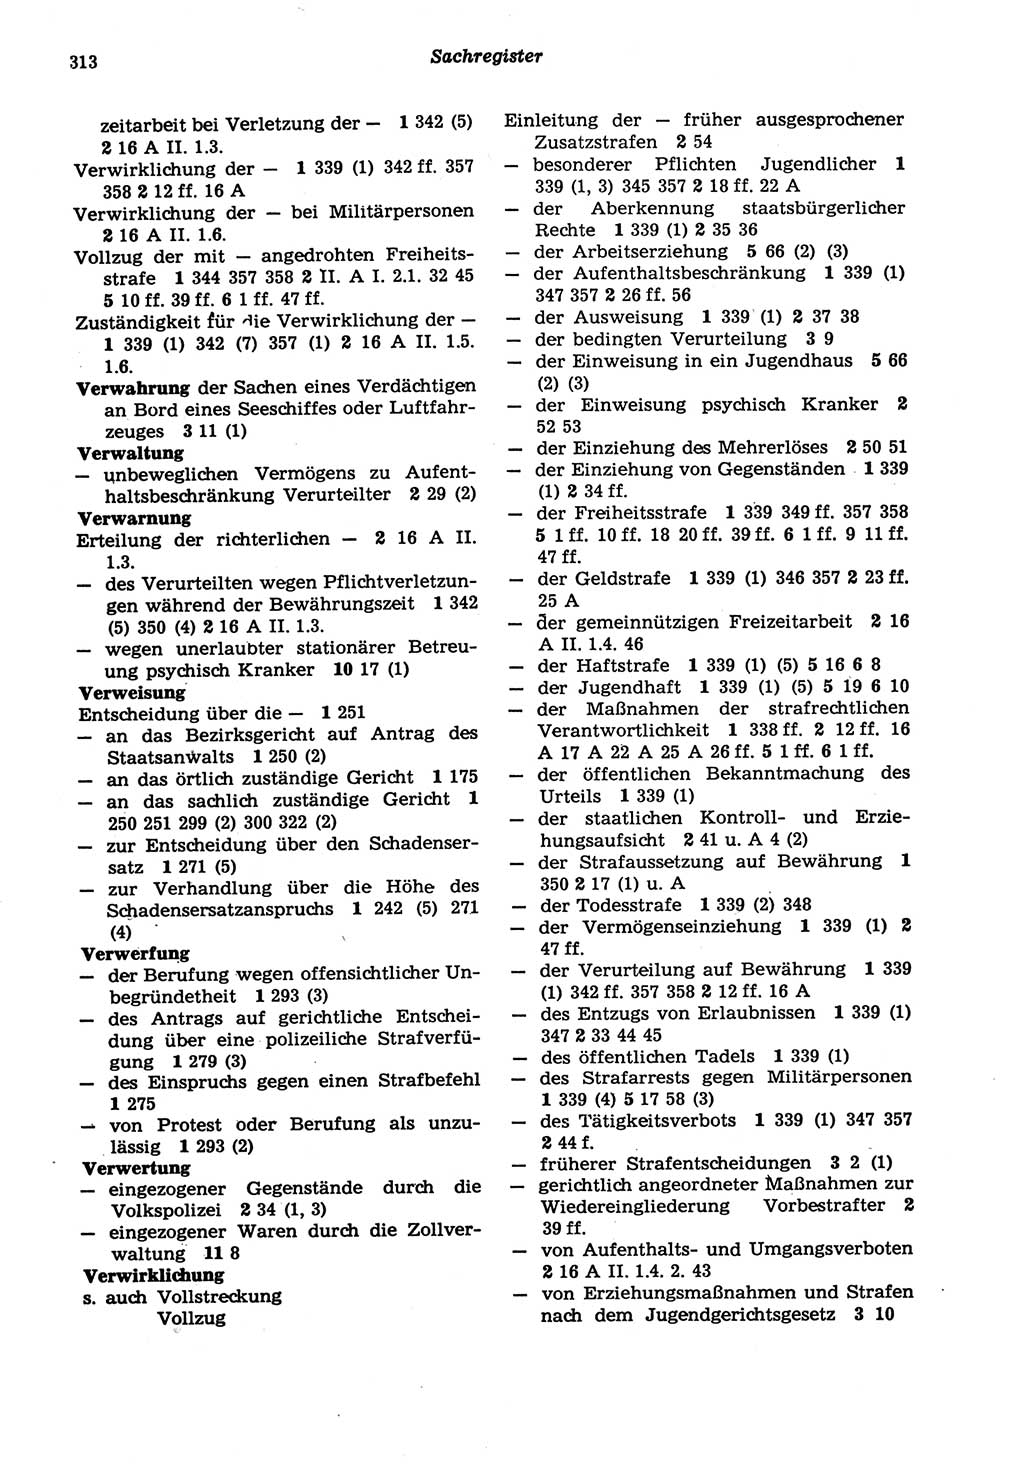 Strafprozeßordnung (StPO) der Deutschen Demokratischen Republik (DDR) sowie angrenzende Gesetze und Bestimmungen 1977, Seite 313 (StPO DDR Ges. Best. 1977, S. 313)